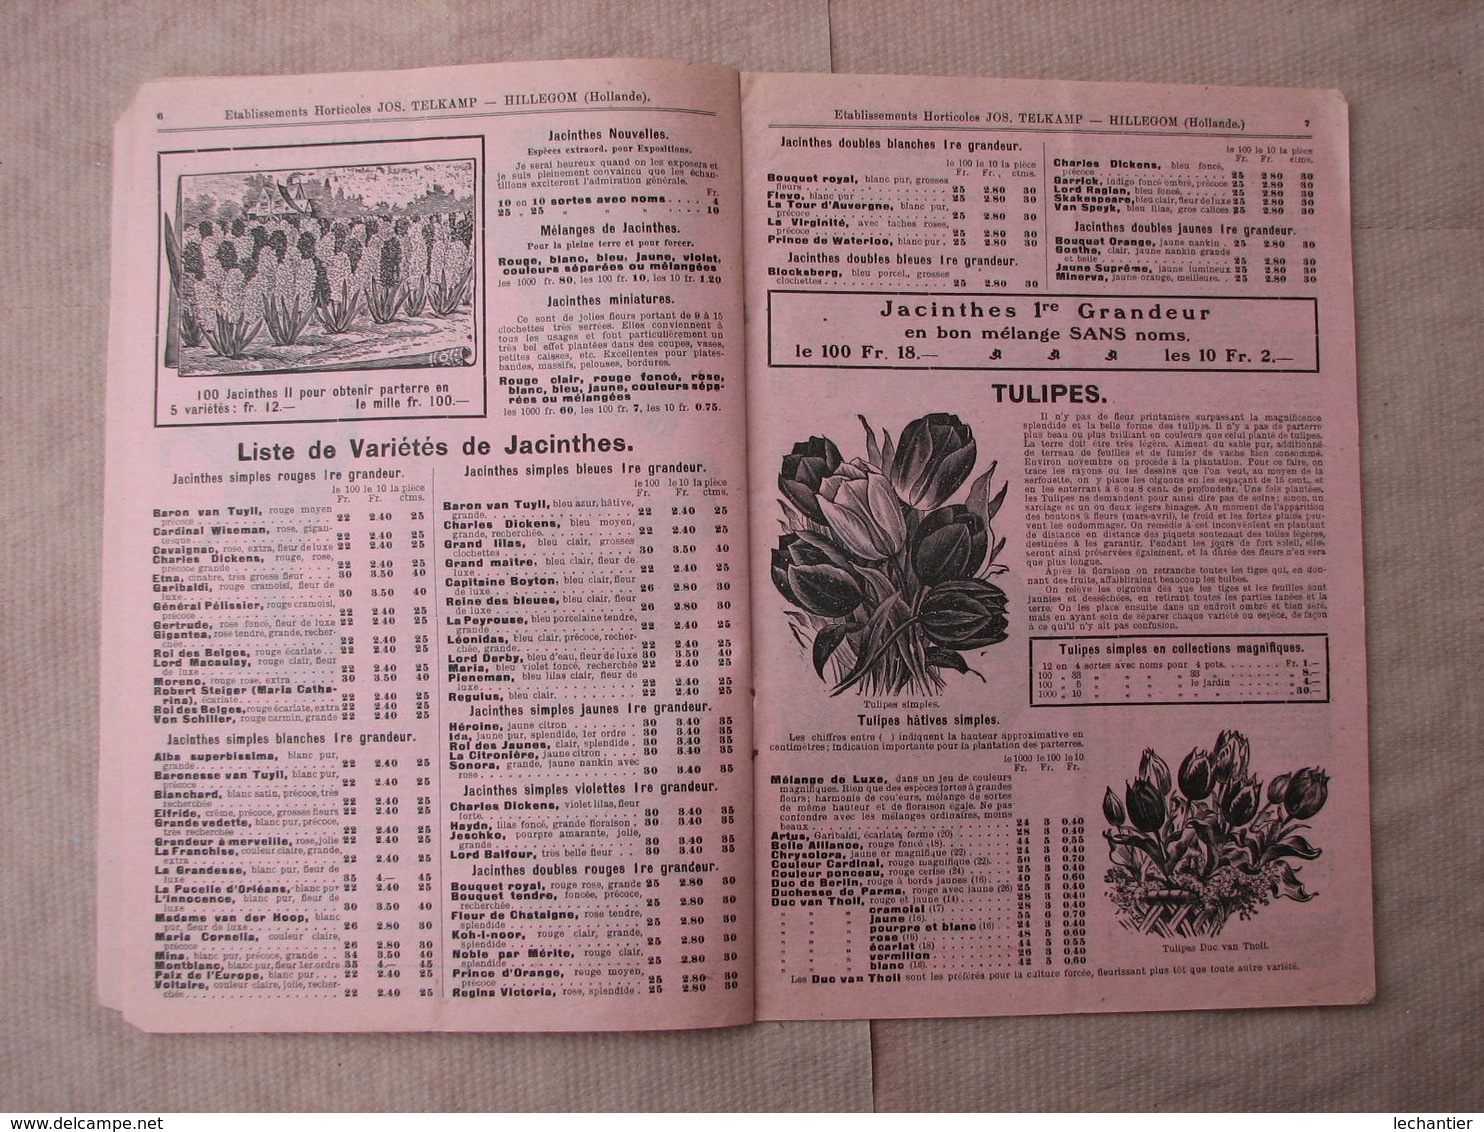 4 Catalogues Oignons à Fleurs 1910  1909  1920  " VELSEN - JOS TELKAMP - ROOZEN "  B.E. voir photos